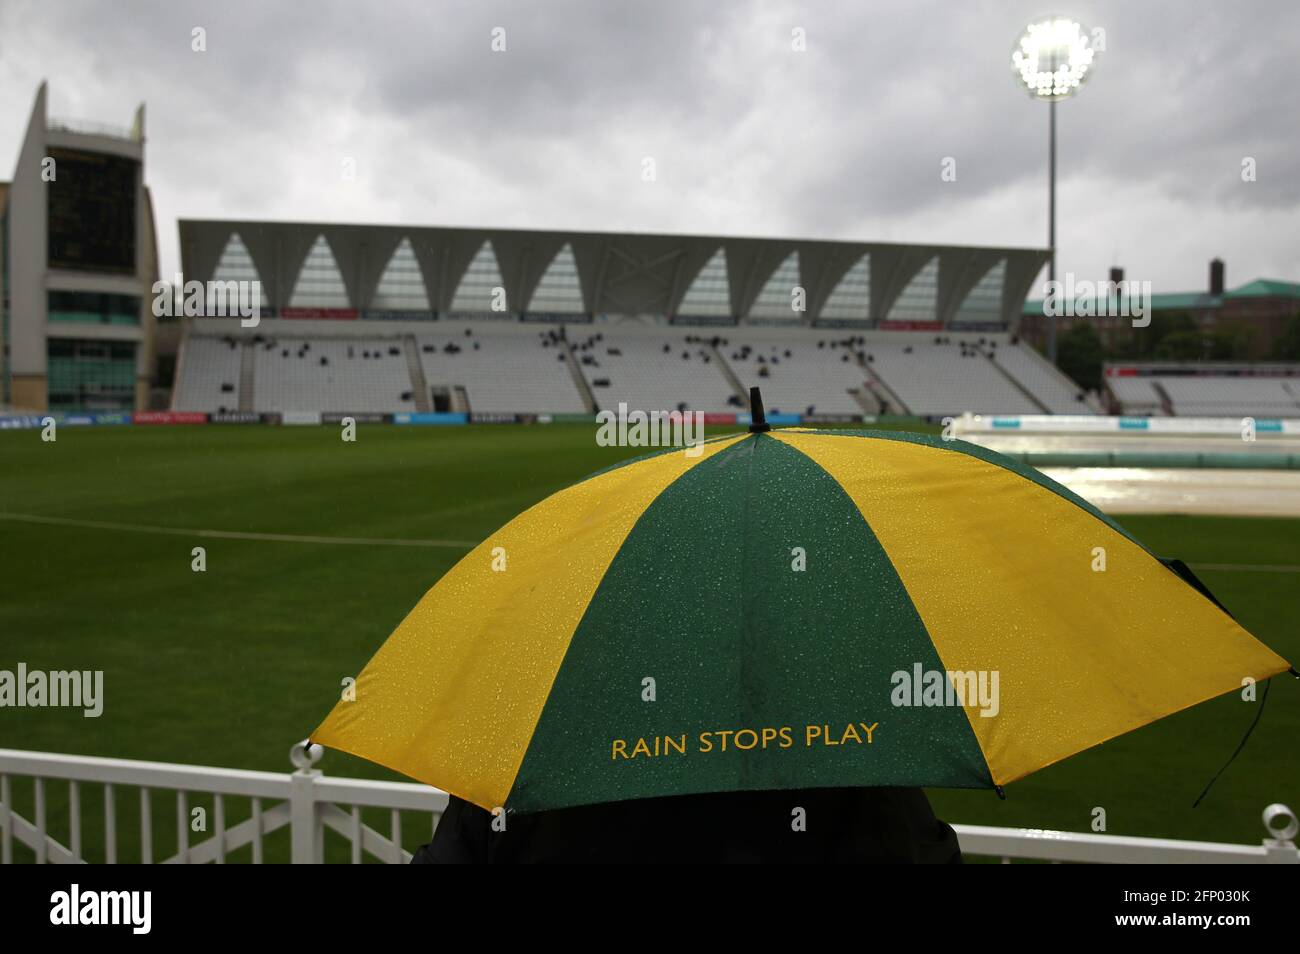 Un spectateur se trouve sous un parapluie de la marque de Notinghamshire tandis que la pluie s'arrête pendant le premier jour du championnat LV= Insurance County à Trent Bridge, Nottingham. Date de la photo: Jeudi 20 mai 2021. Banque D'Images